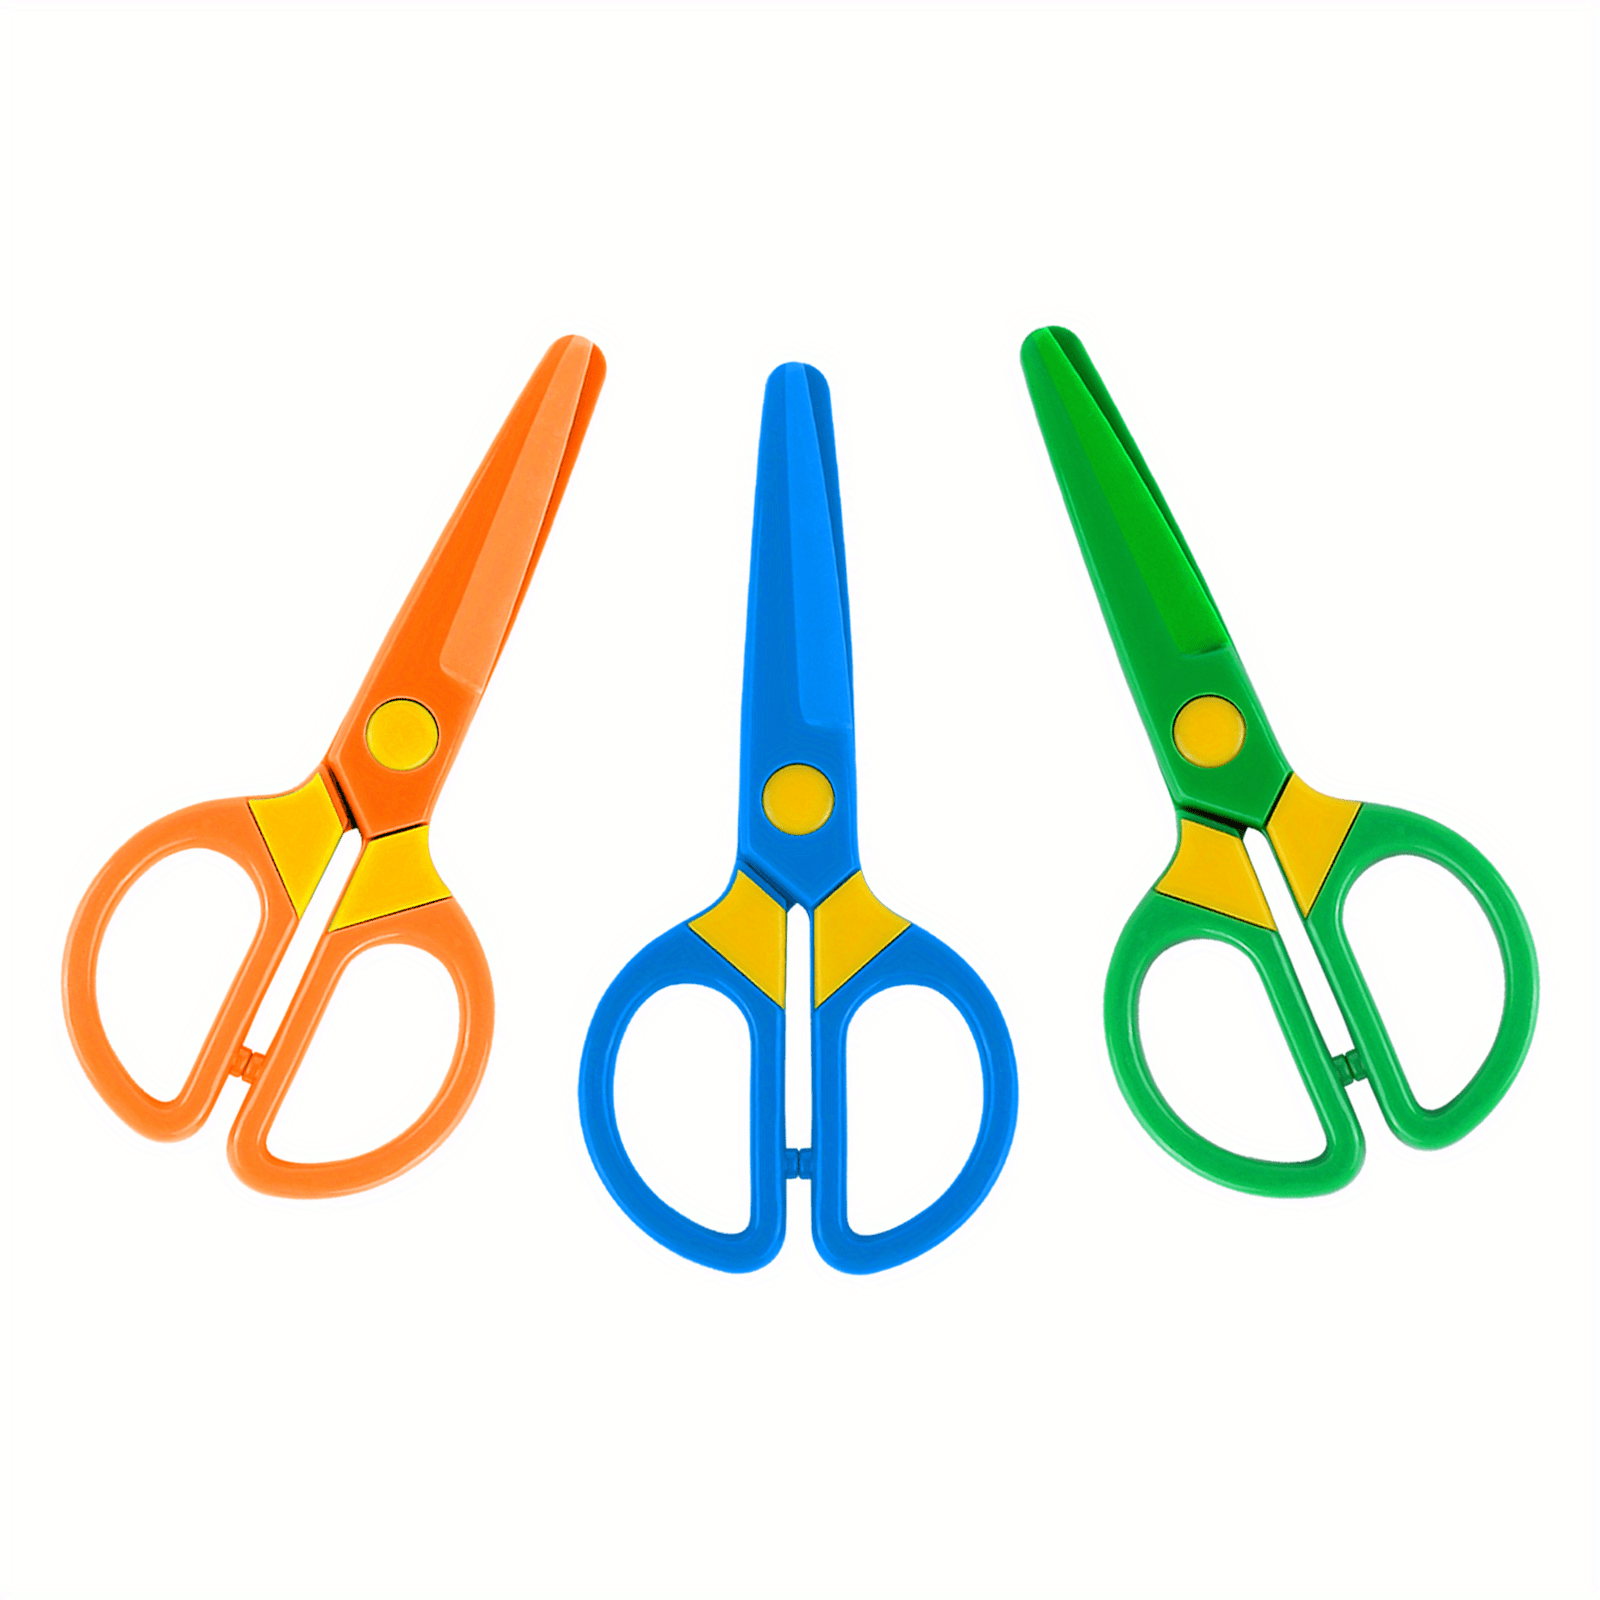 Safe Fun Paper cutting Scissors Anti pinch Design For - Temu